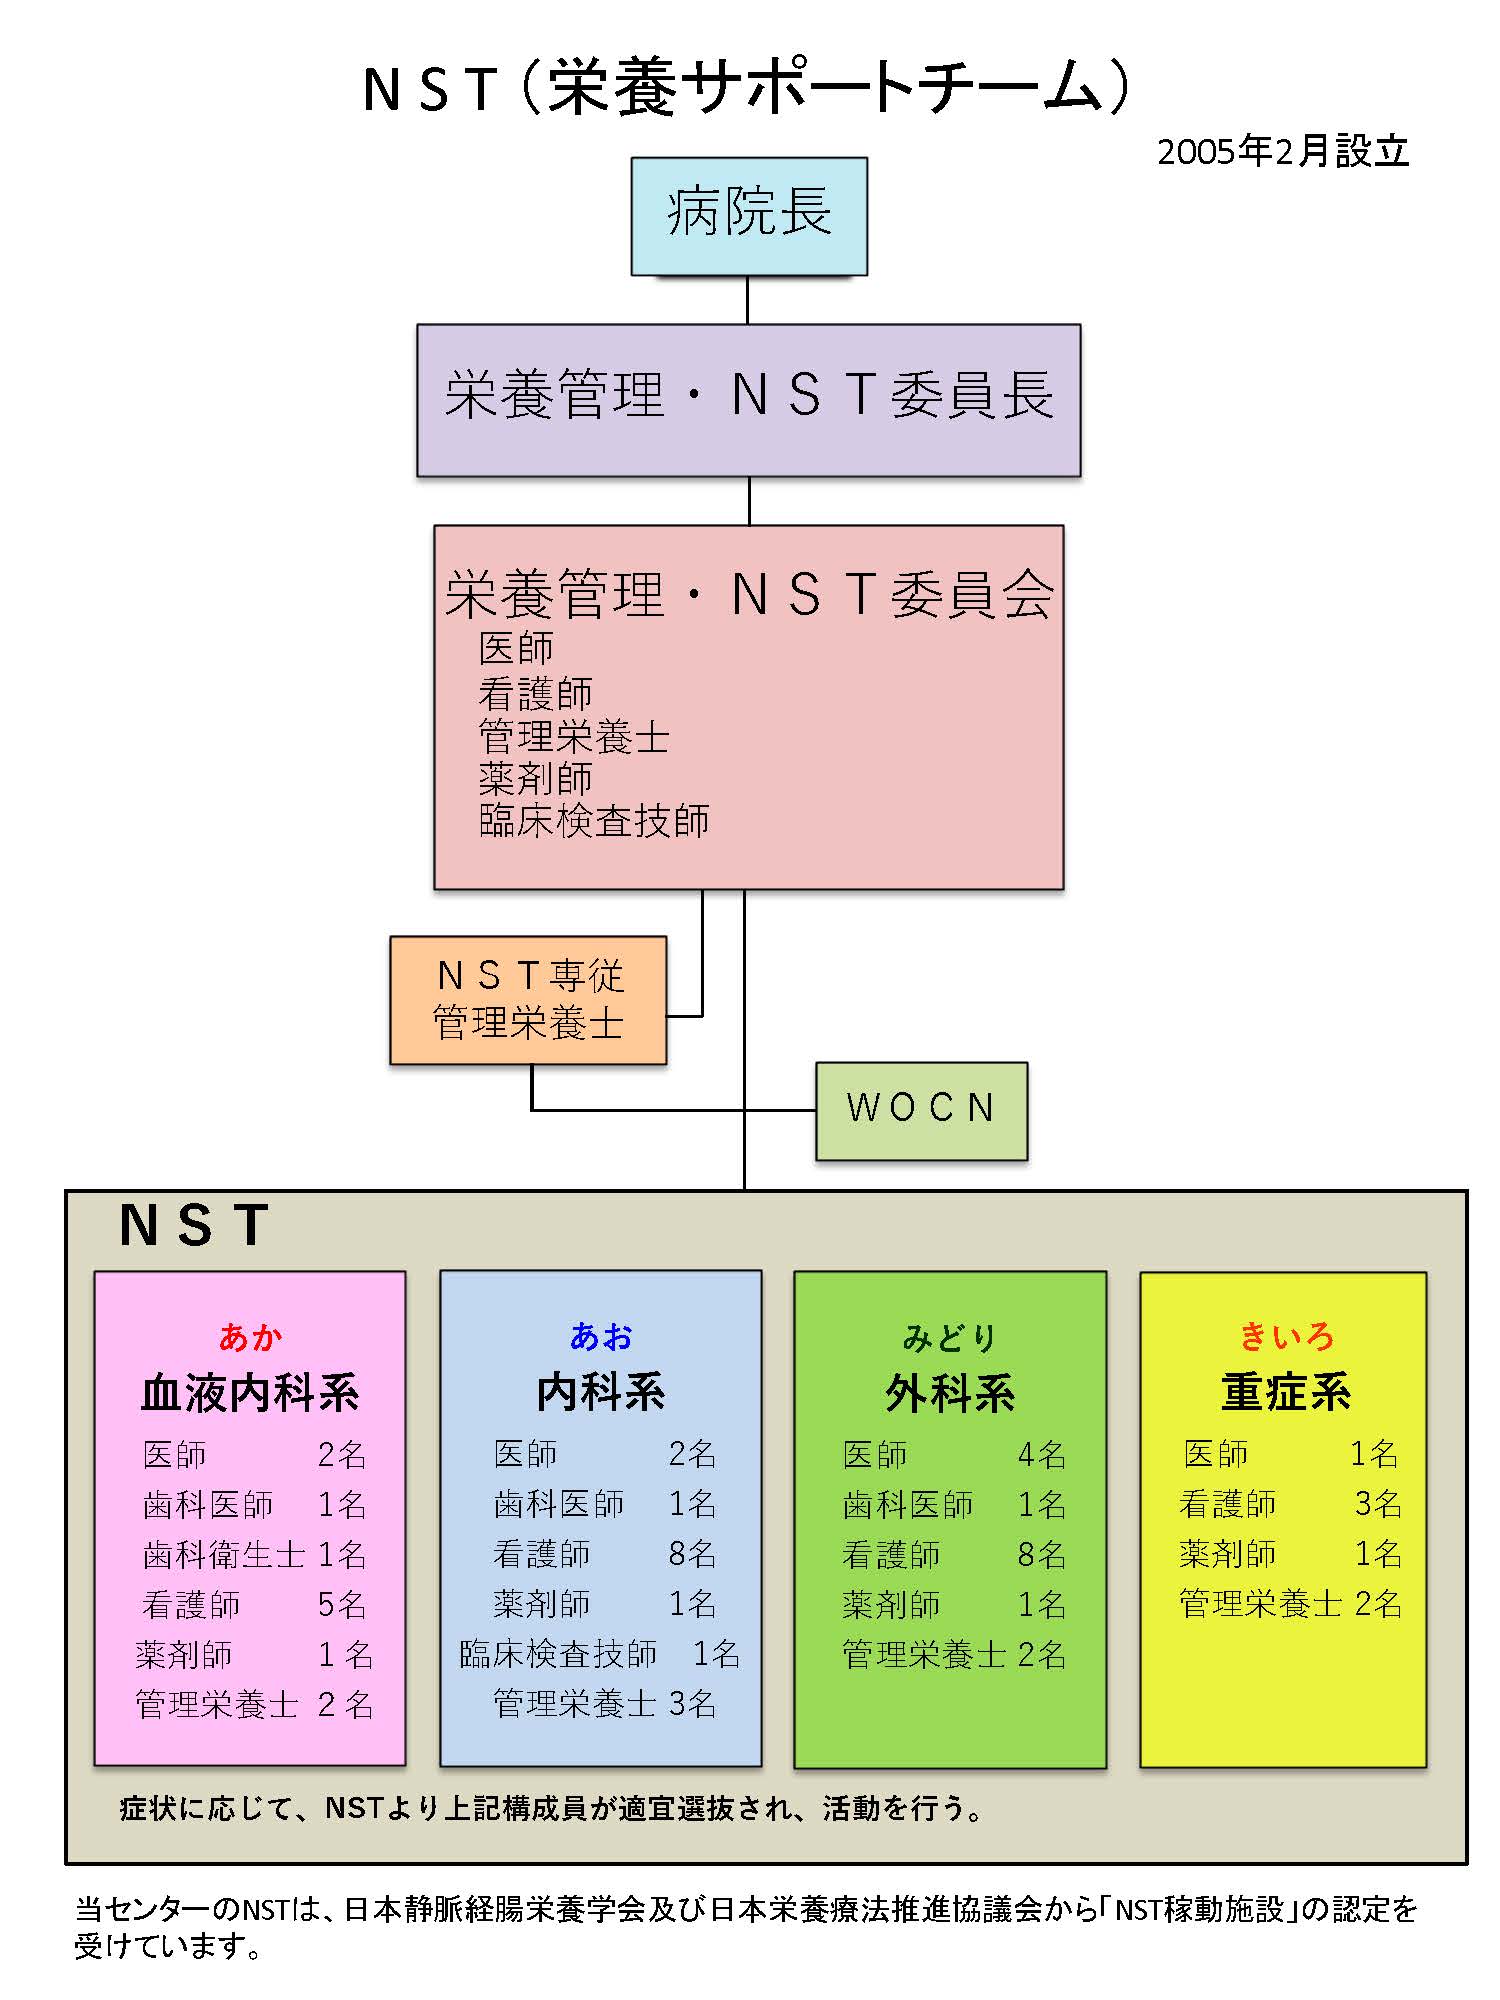 NST組織図